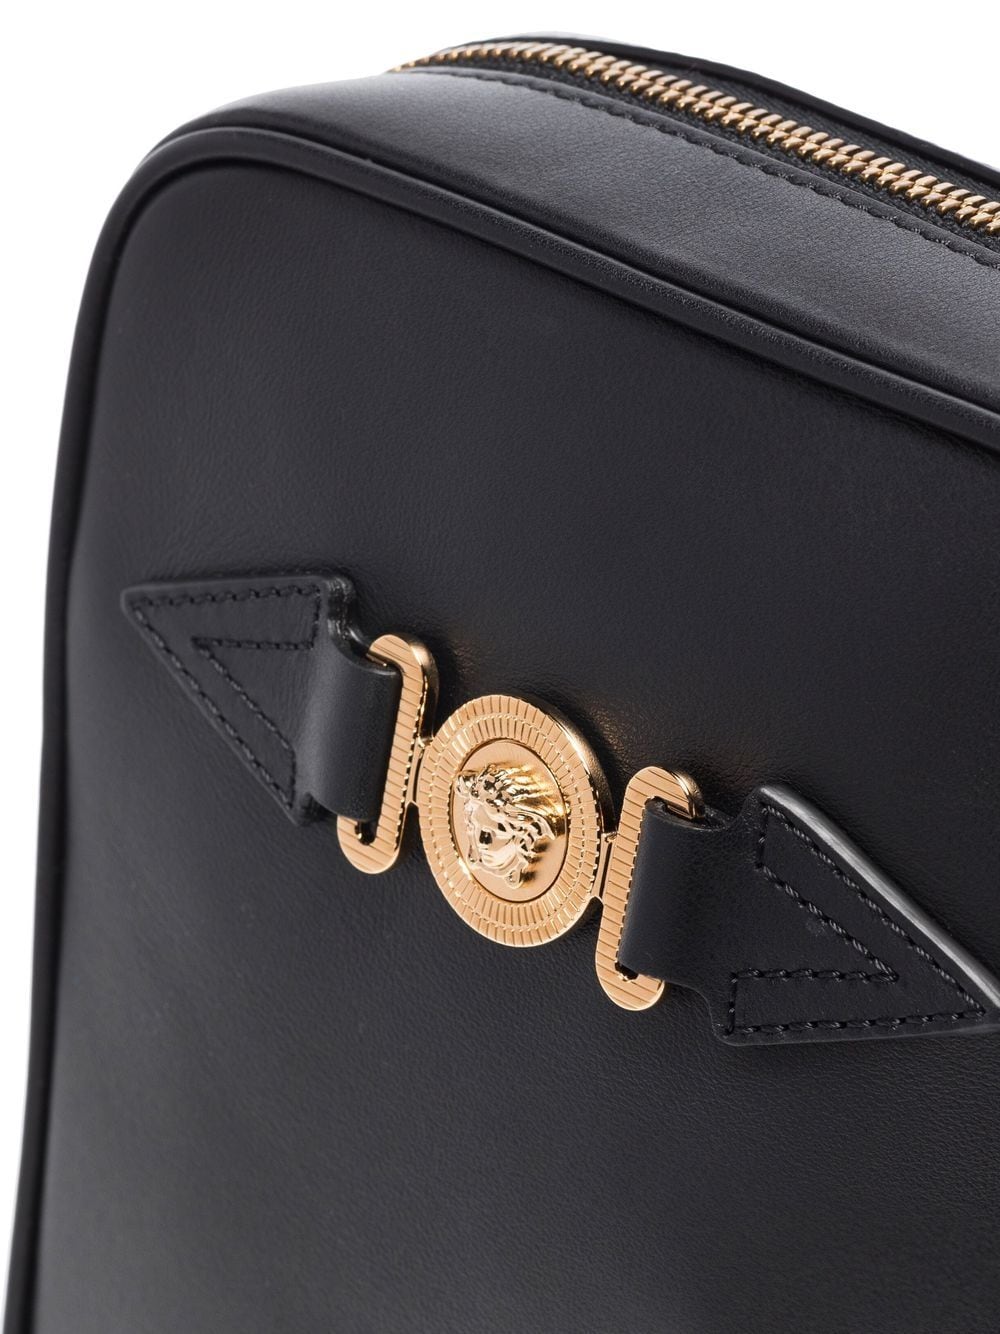 Jet-black leather Medusa Biggie leather messenger bag